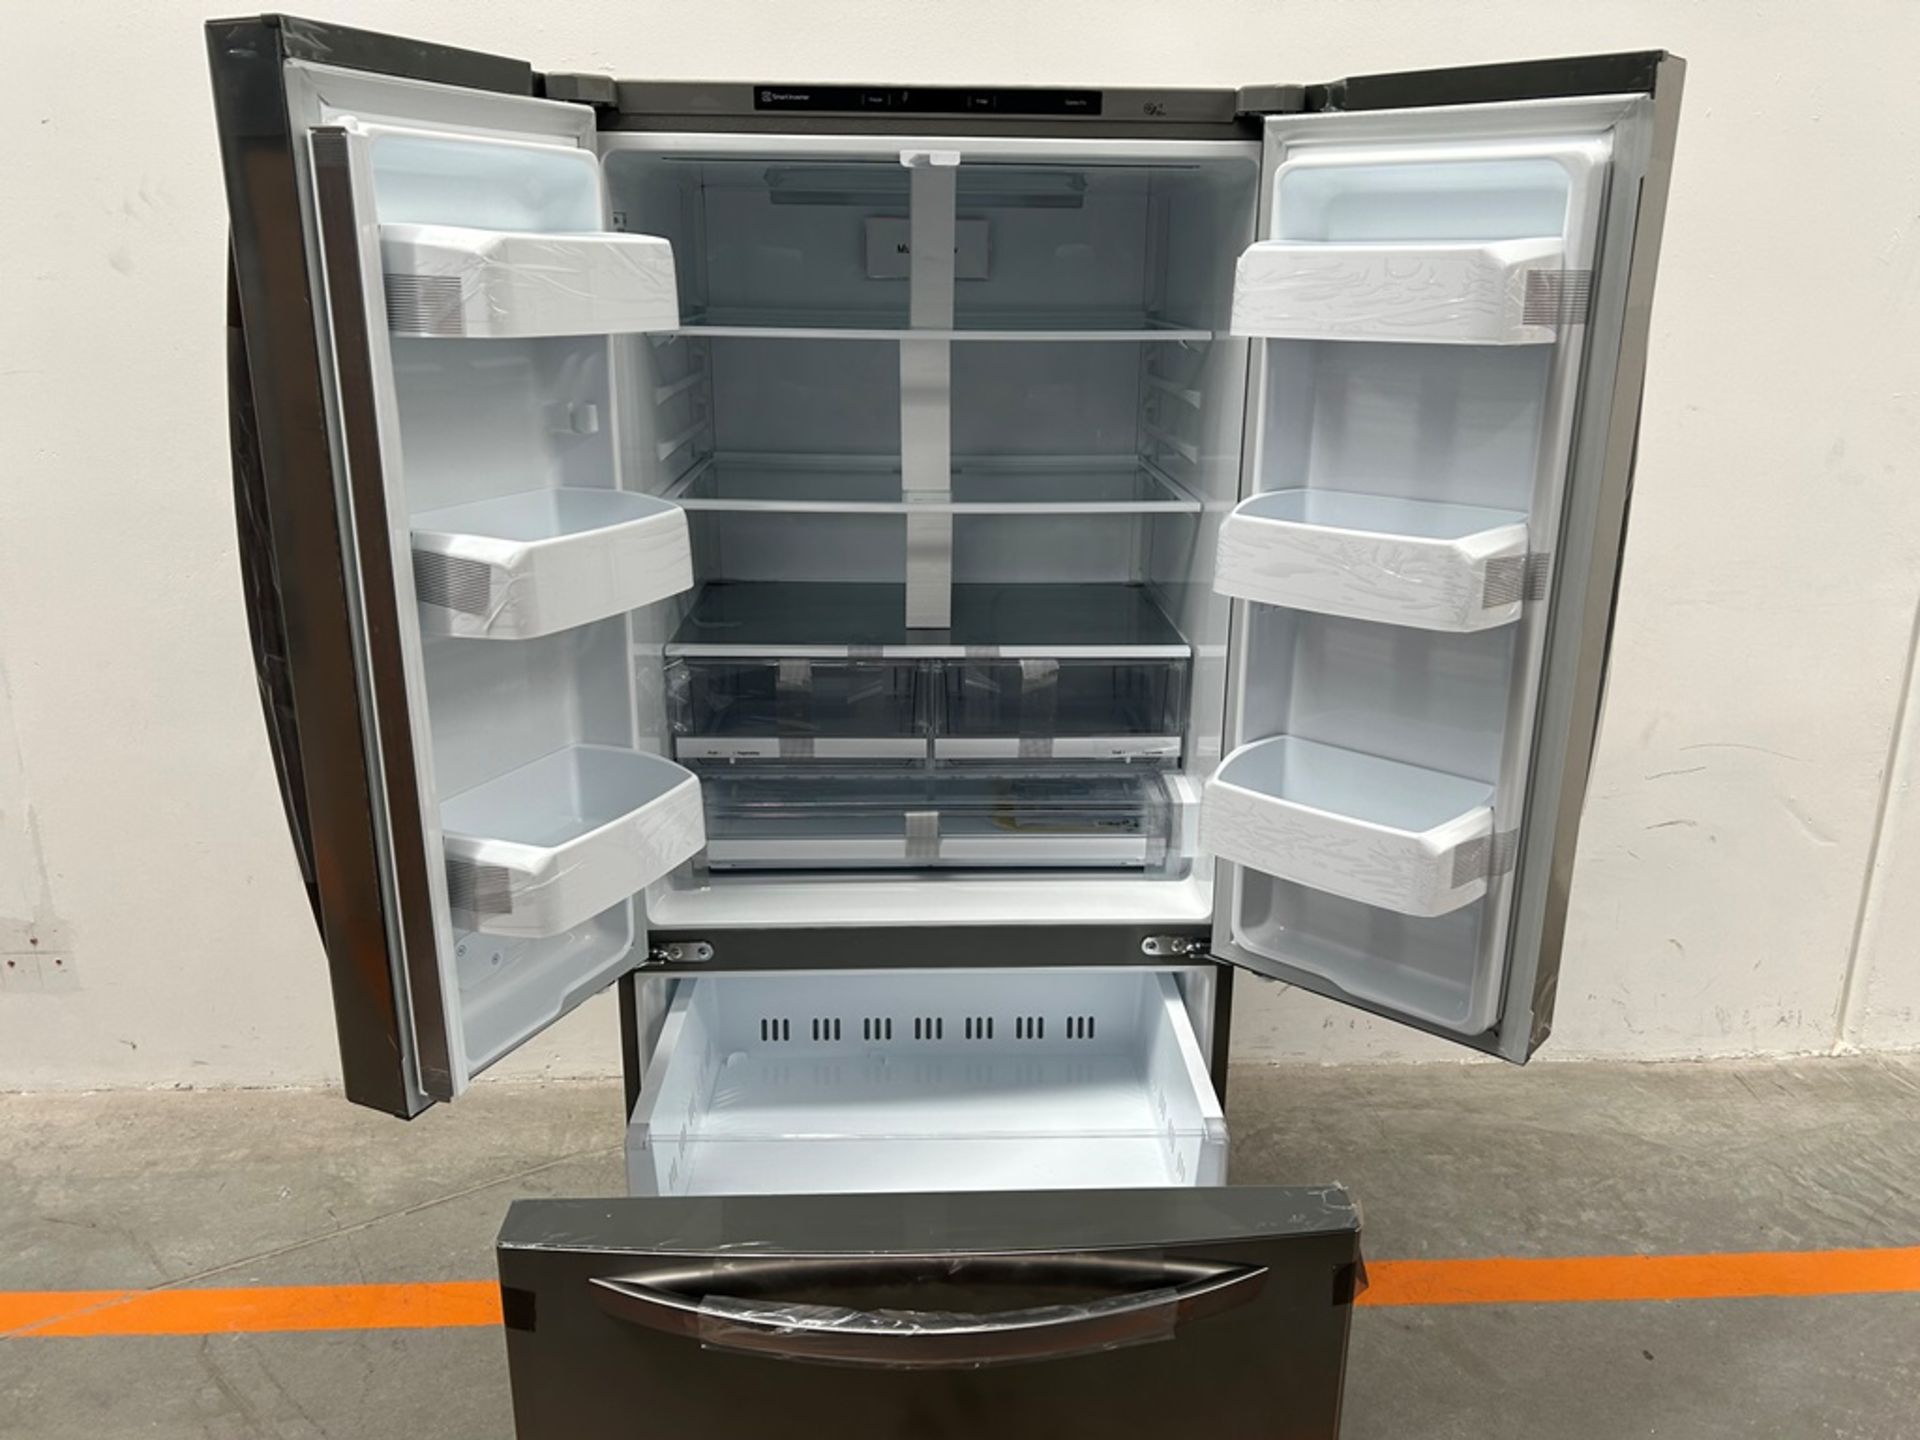 (NUEVO) Refrigerador Marca LG, Modelo GM65BGSK, Serie A30018, Color GRIS - Image 4 of 11